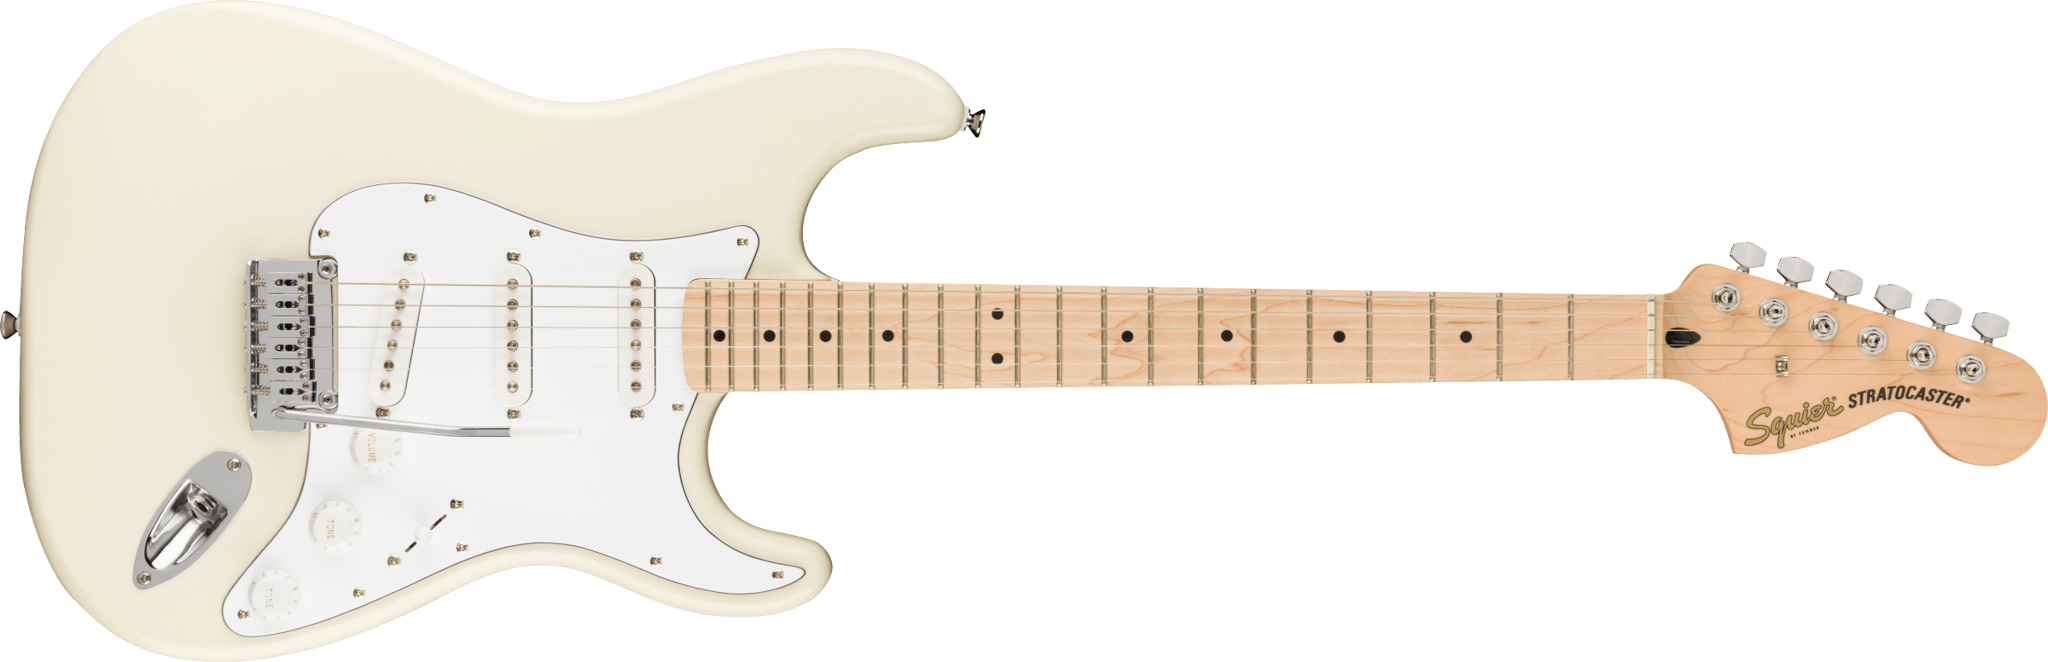 Billede af Fender Squier Affinity Stratocaster El-guitar (Olympic White)